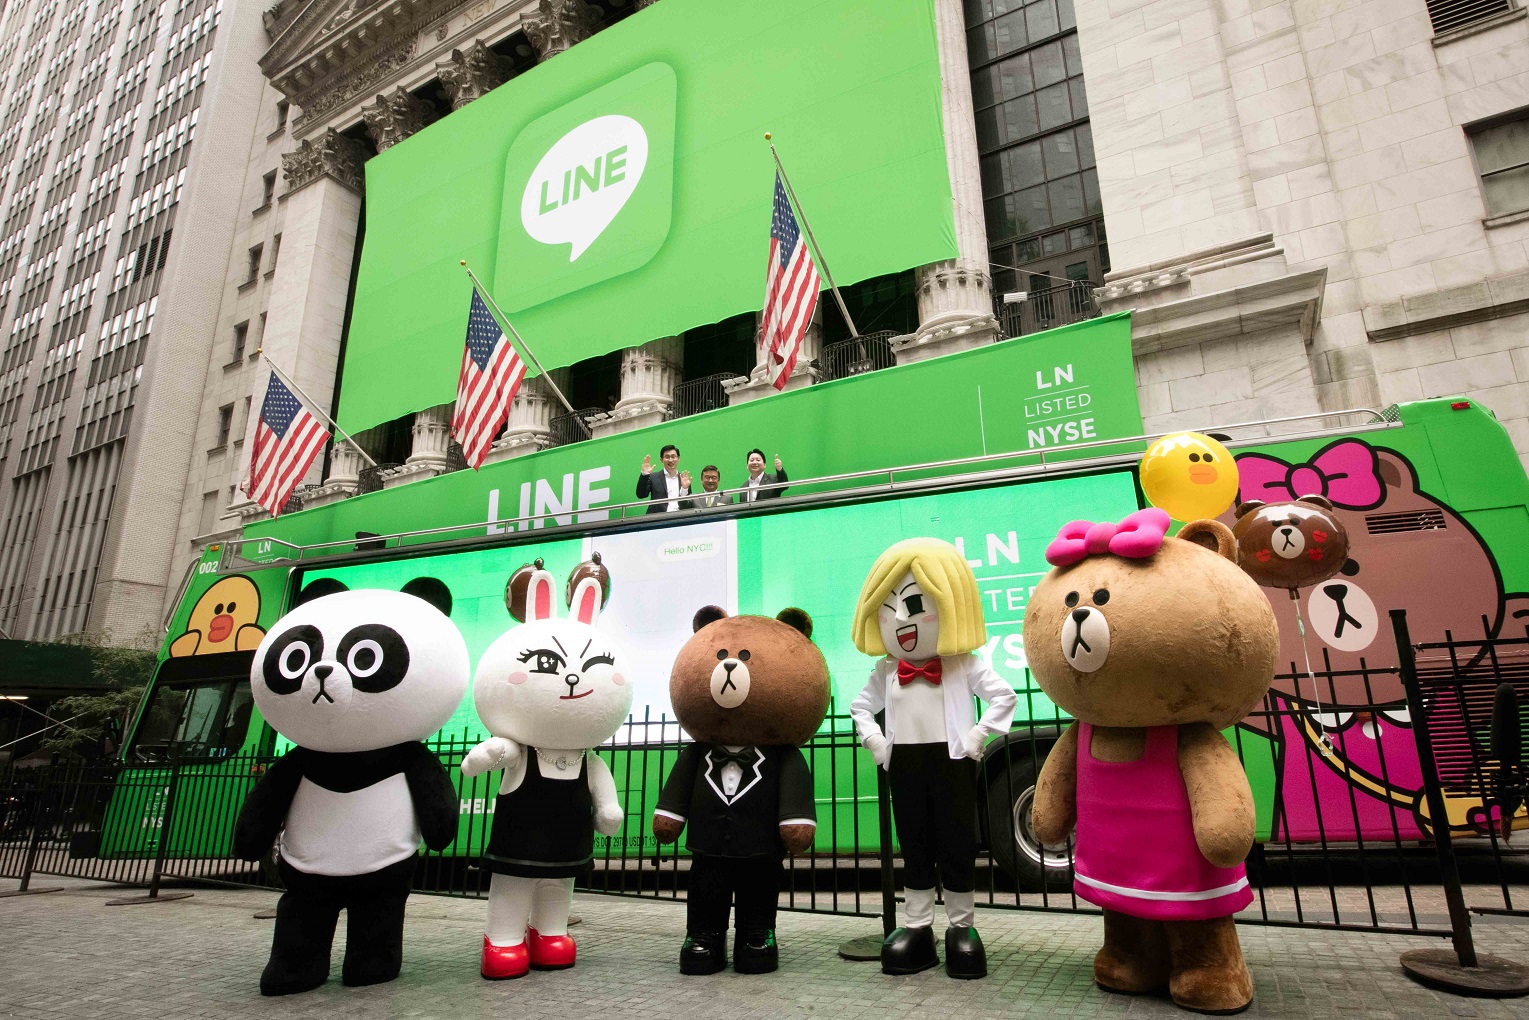 LINE เปิดตัวในตลาดหลักทรัพย์นิวยอร์ค “NYSE” อย่างเป็นทางการ